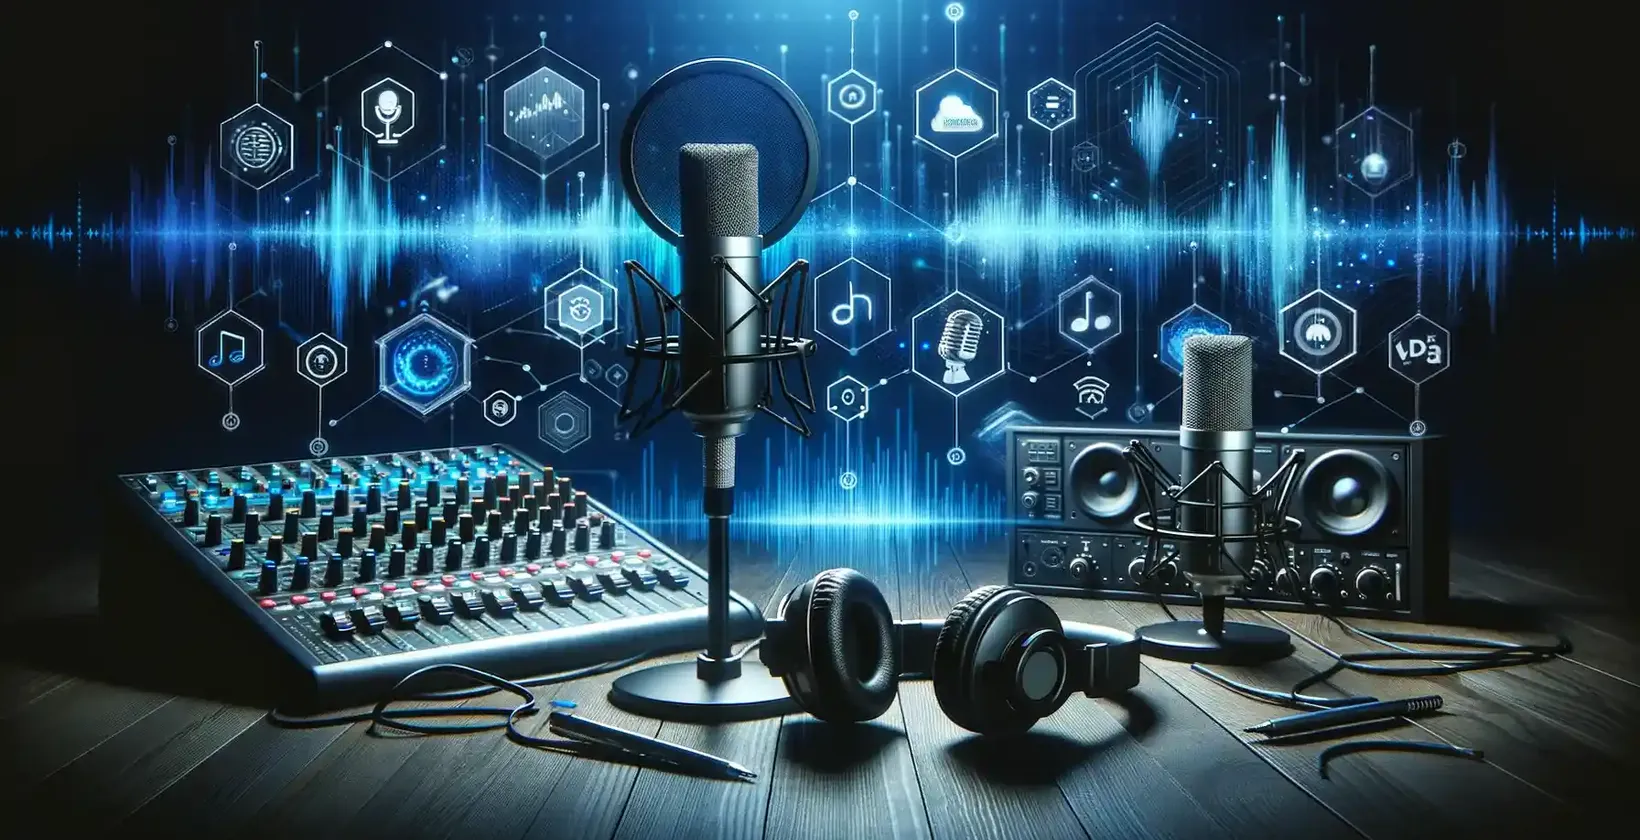 Diretriz de transcrição de podcast em 2023: Equipamento moderno de podcast com interface digital em um fundo escuro.